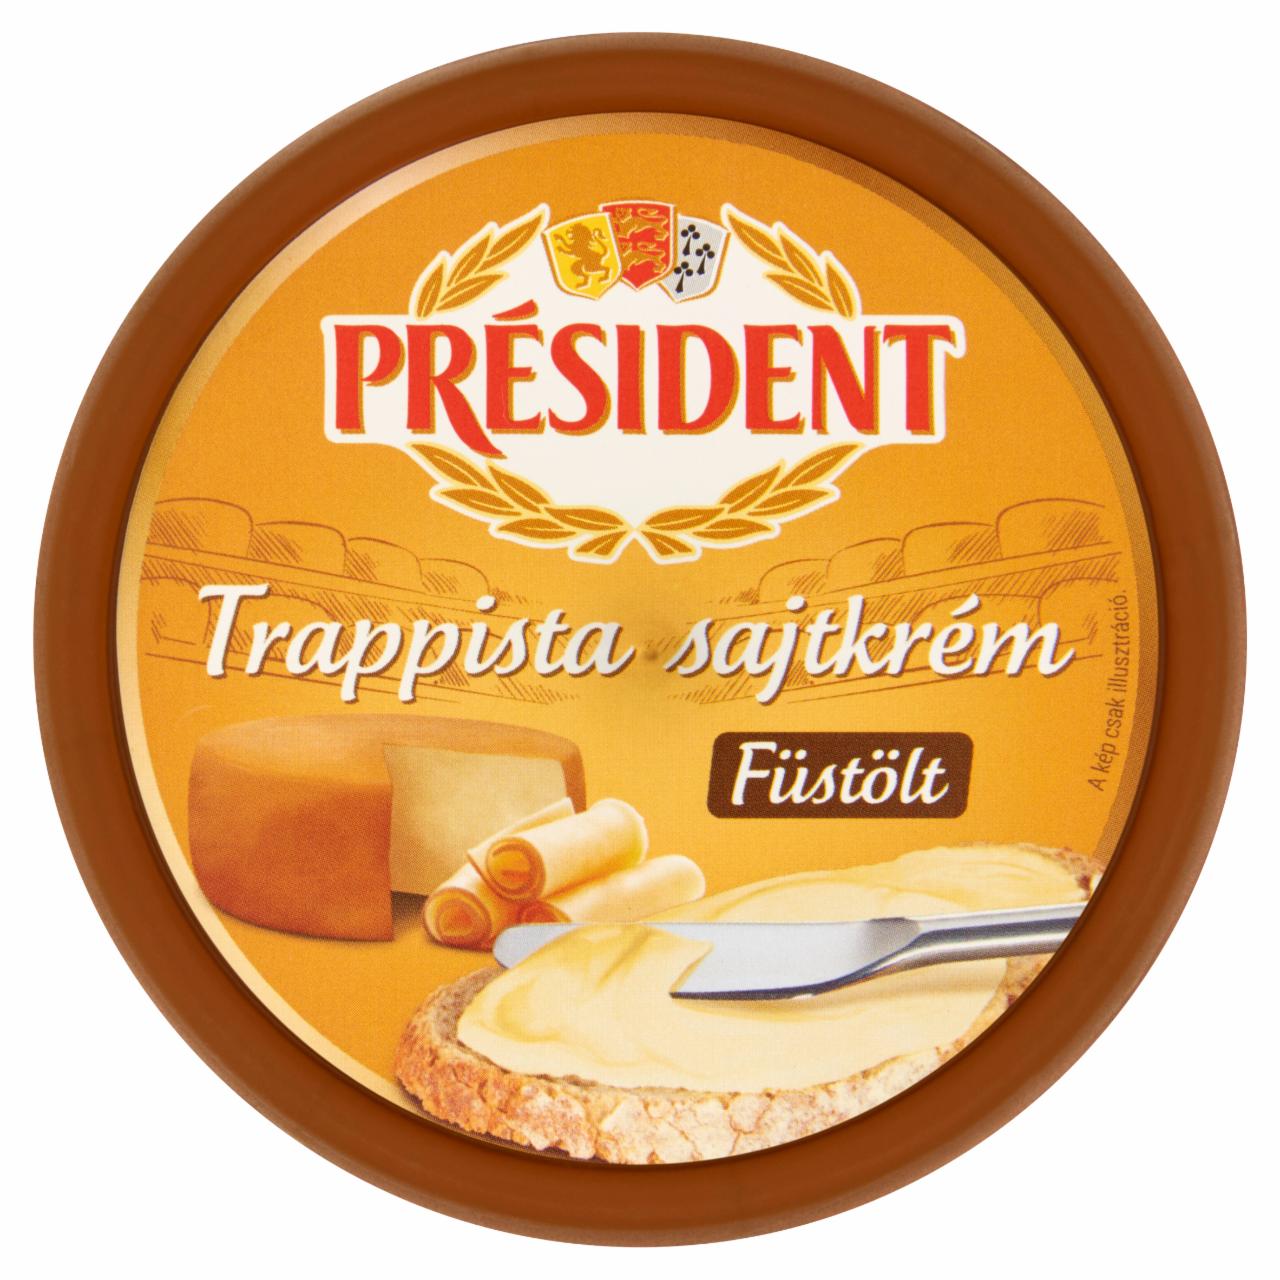 Képek - Président füstölt trappista sajtkrém 125 g